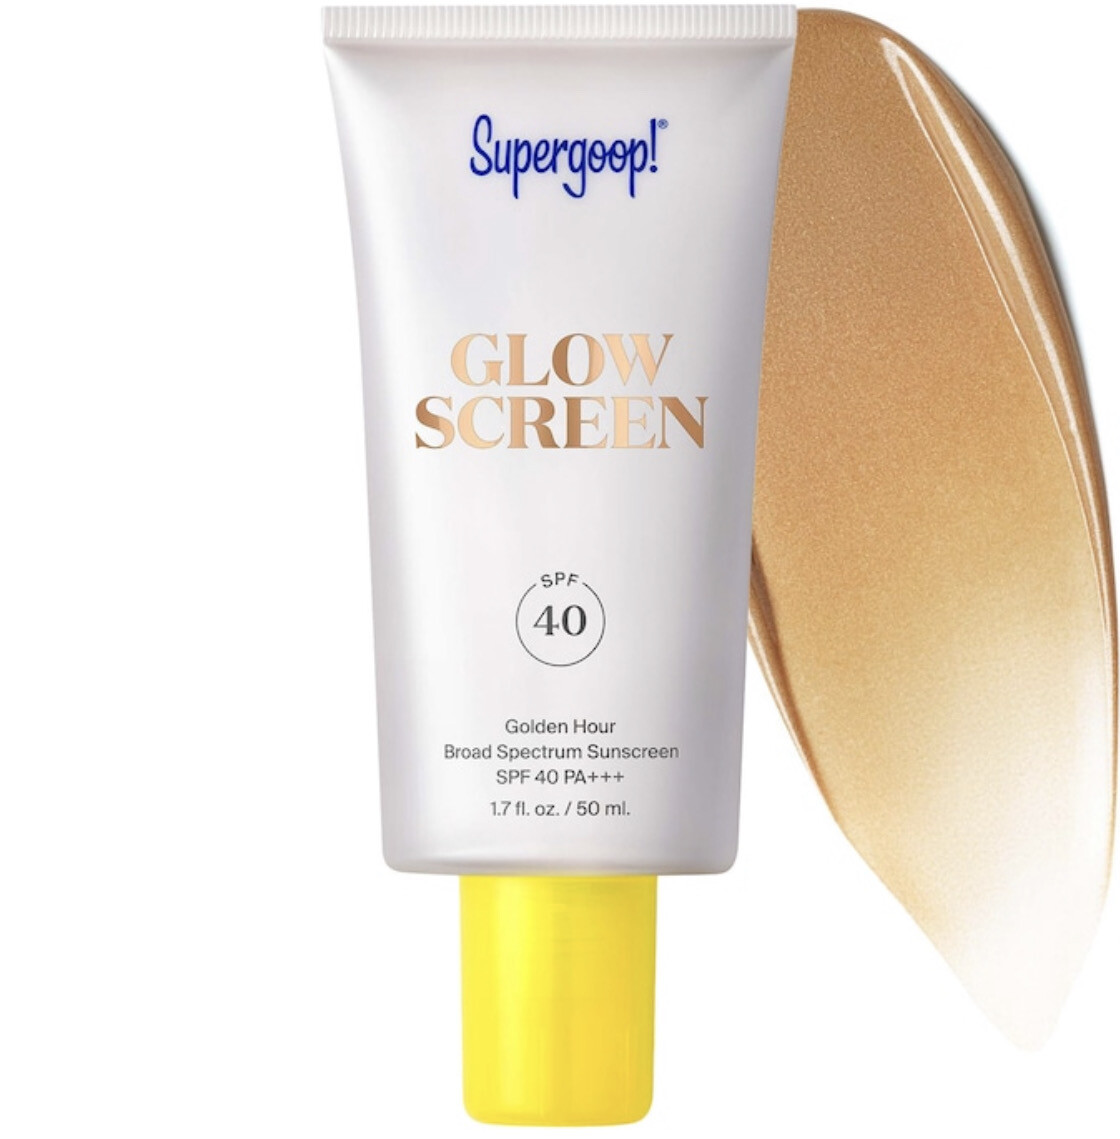 Supergoop! - Glowscreen Sunscreen SPF 40 PA+++ | Golden Hour - bronze